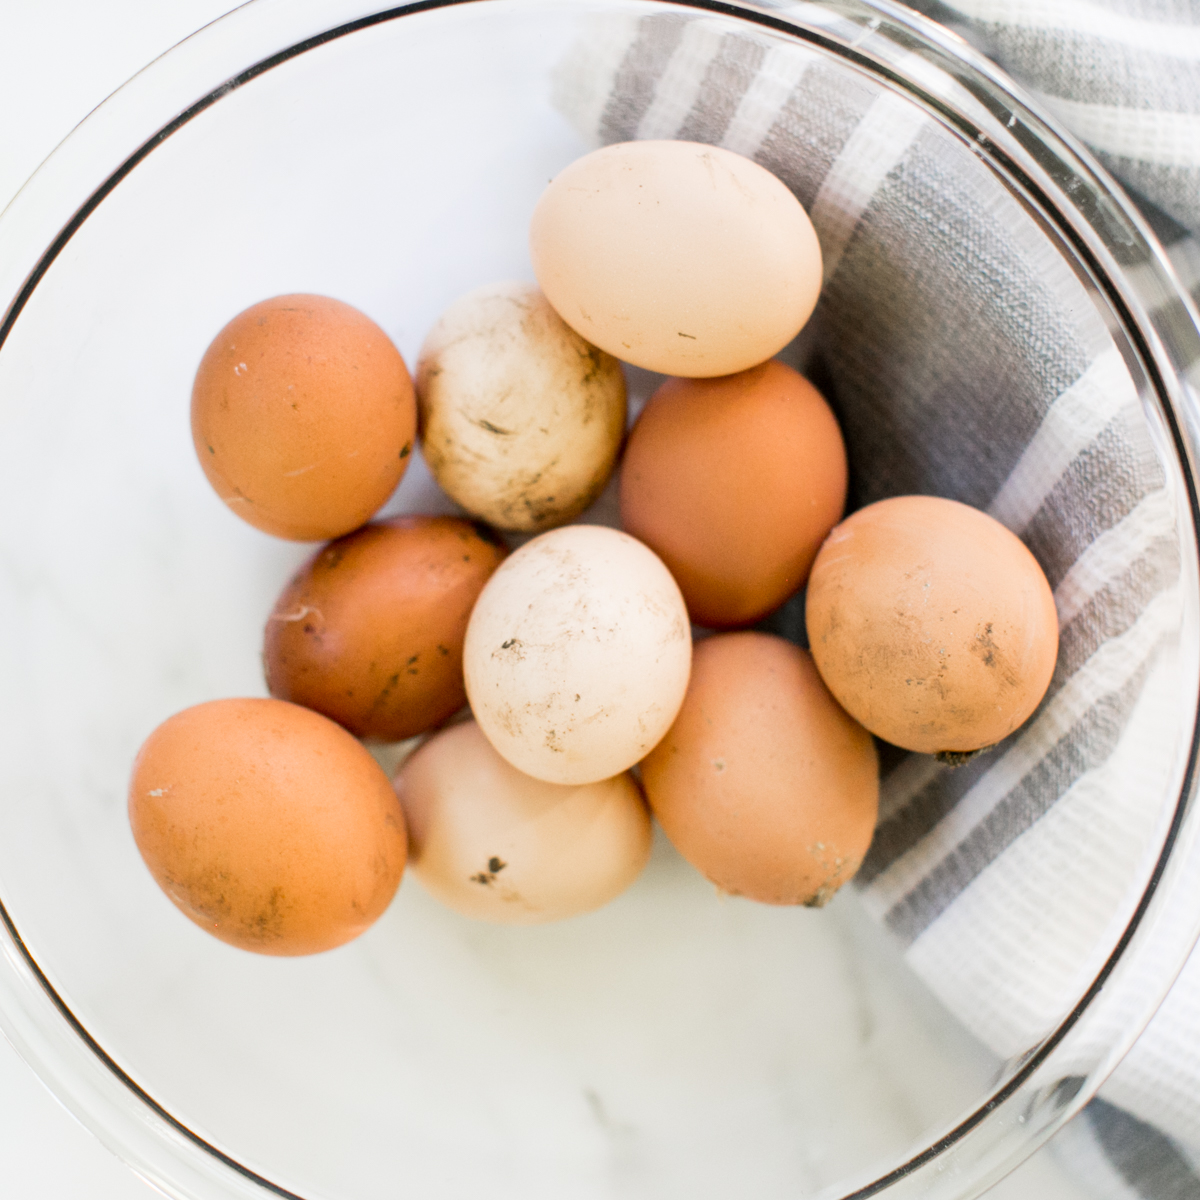 How To Easily Wash Farm Fresh Eggs - Ginger Homemaking